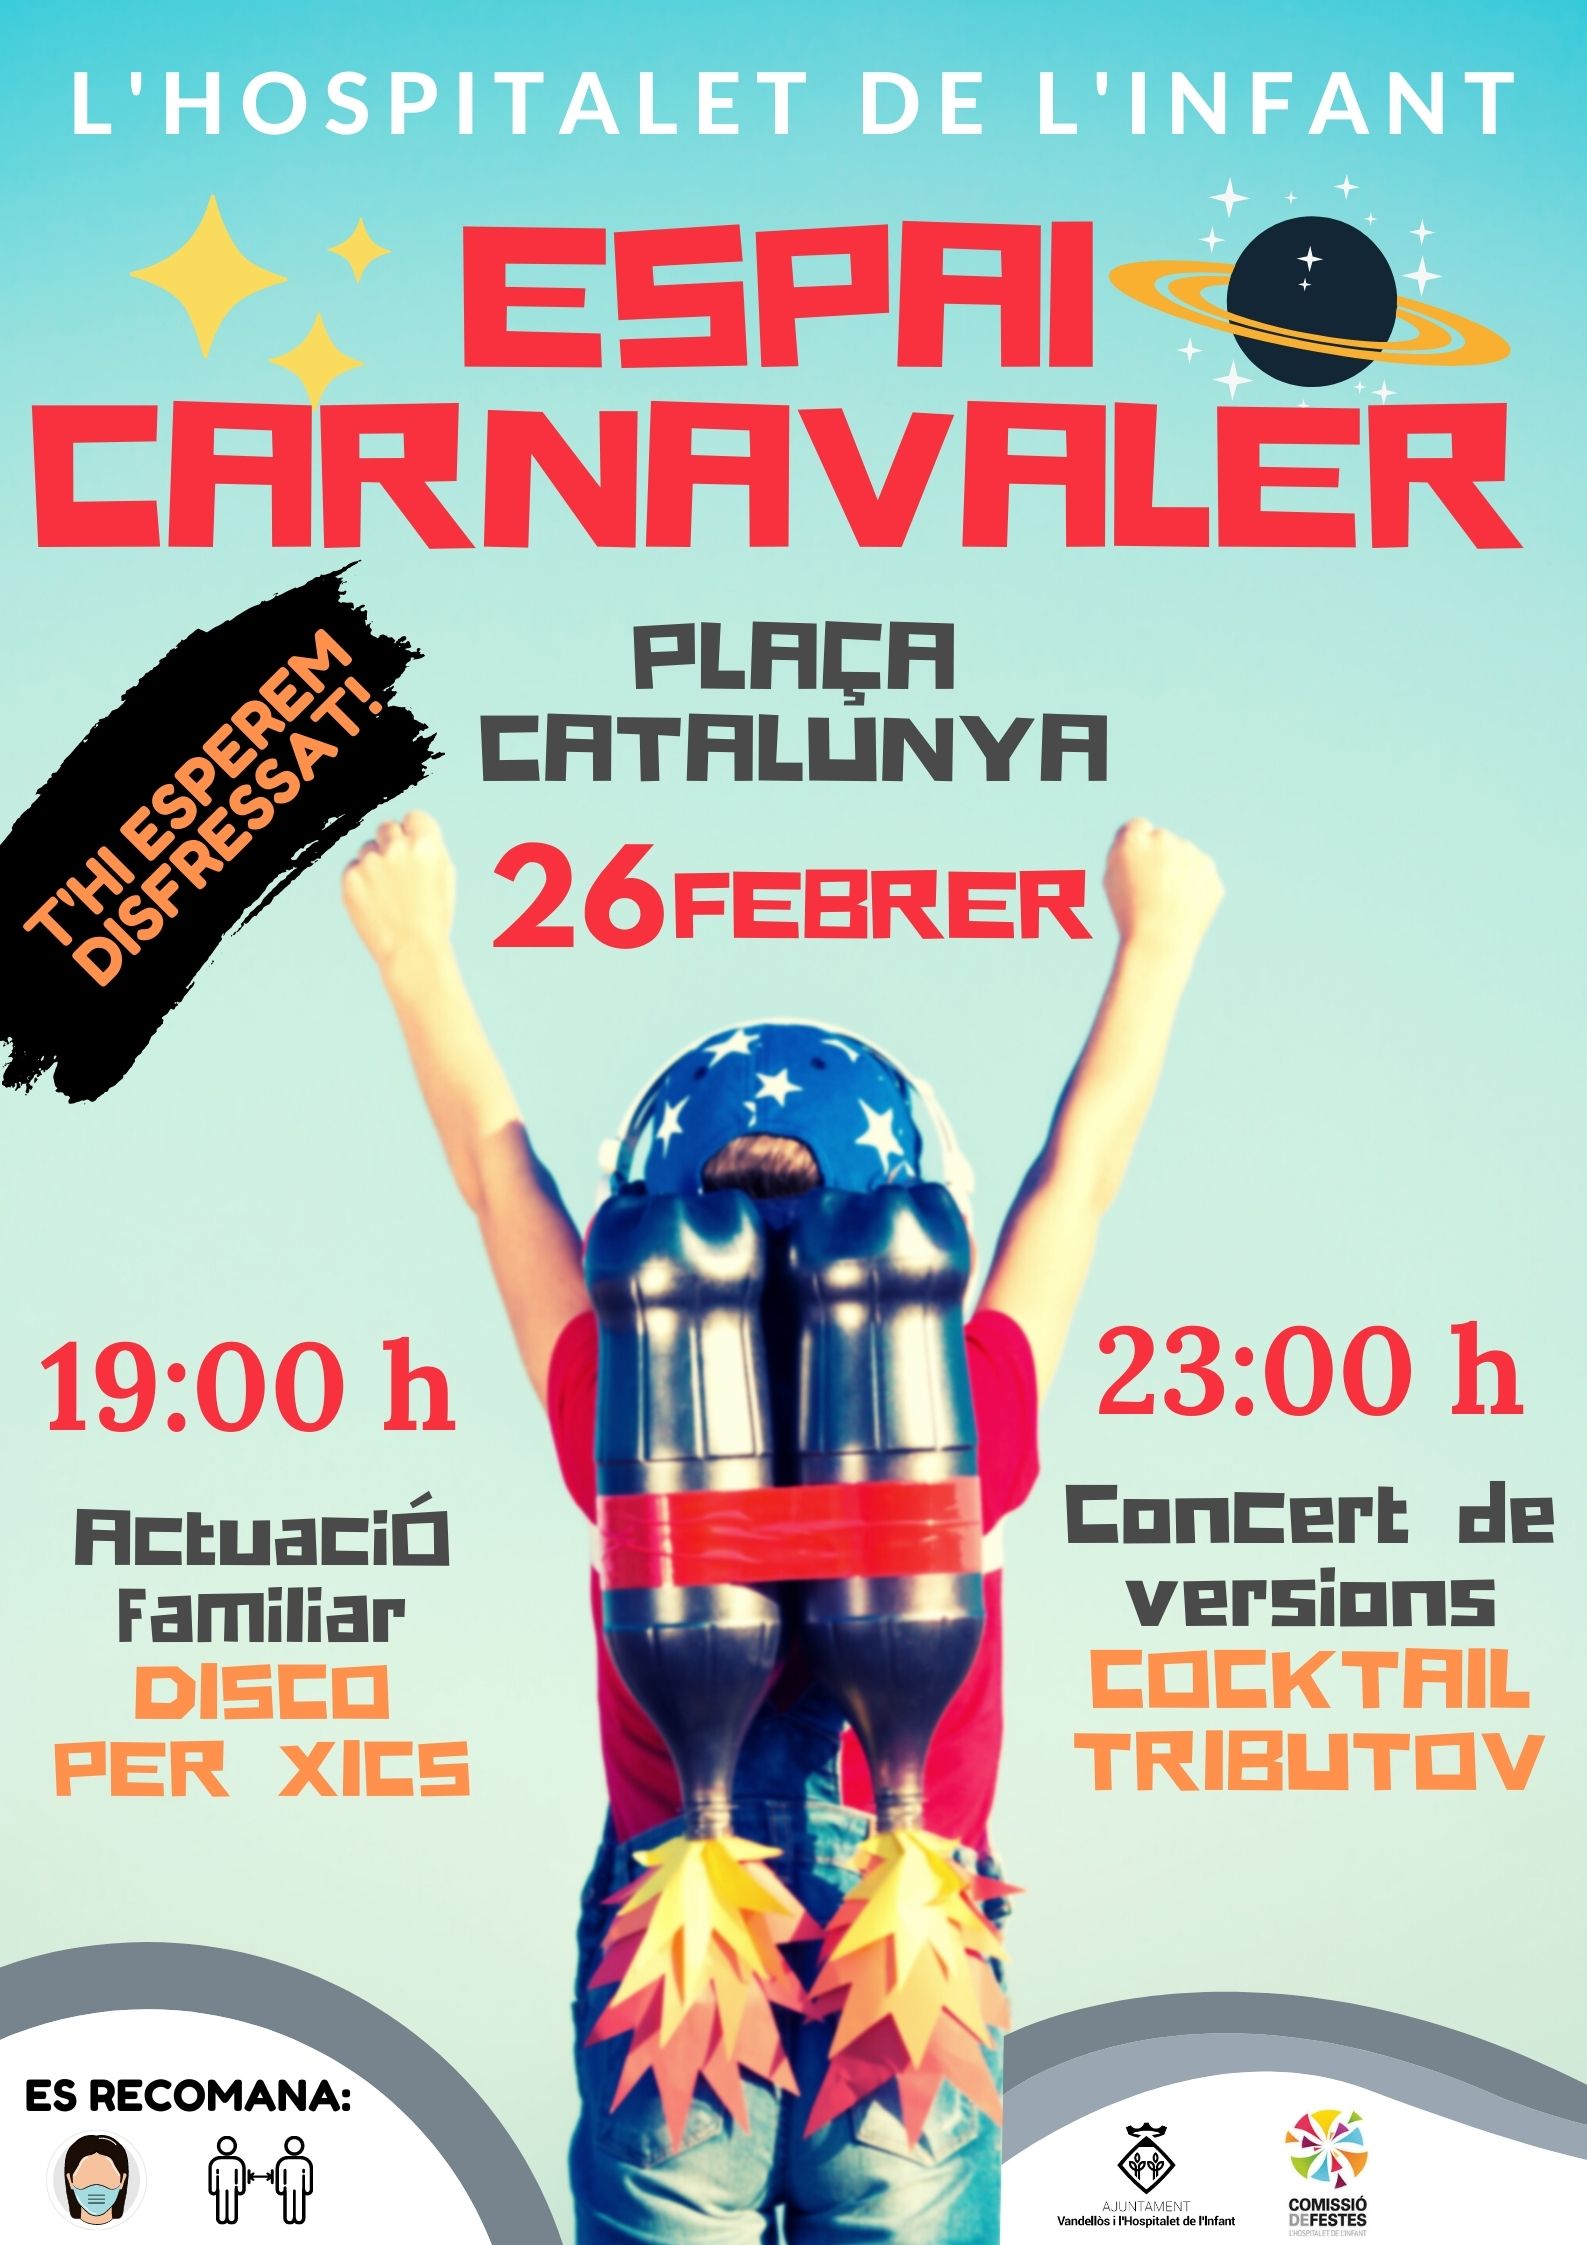 Torna el Carnaval a Vandellòs i l’Hospitalet de l’Infant, adaptat a les circumstàncies actuals